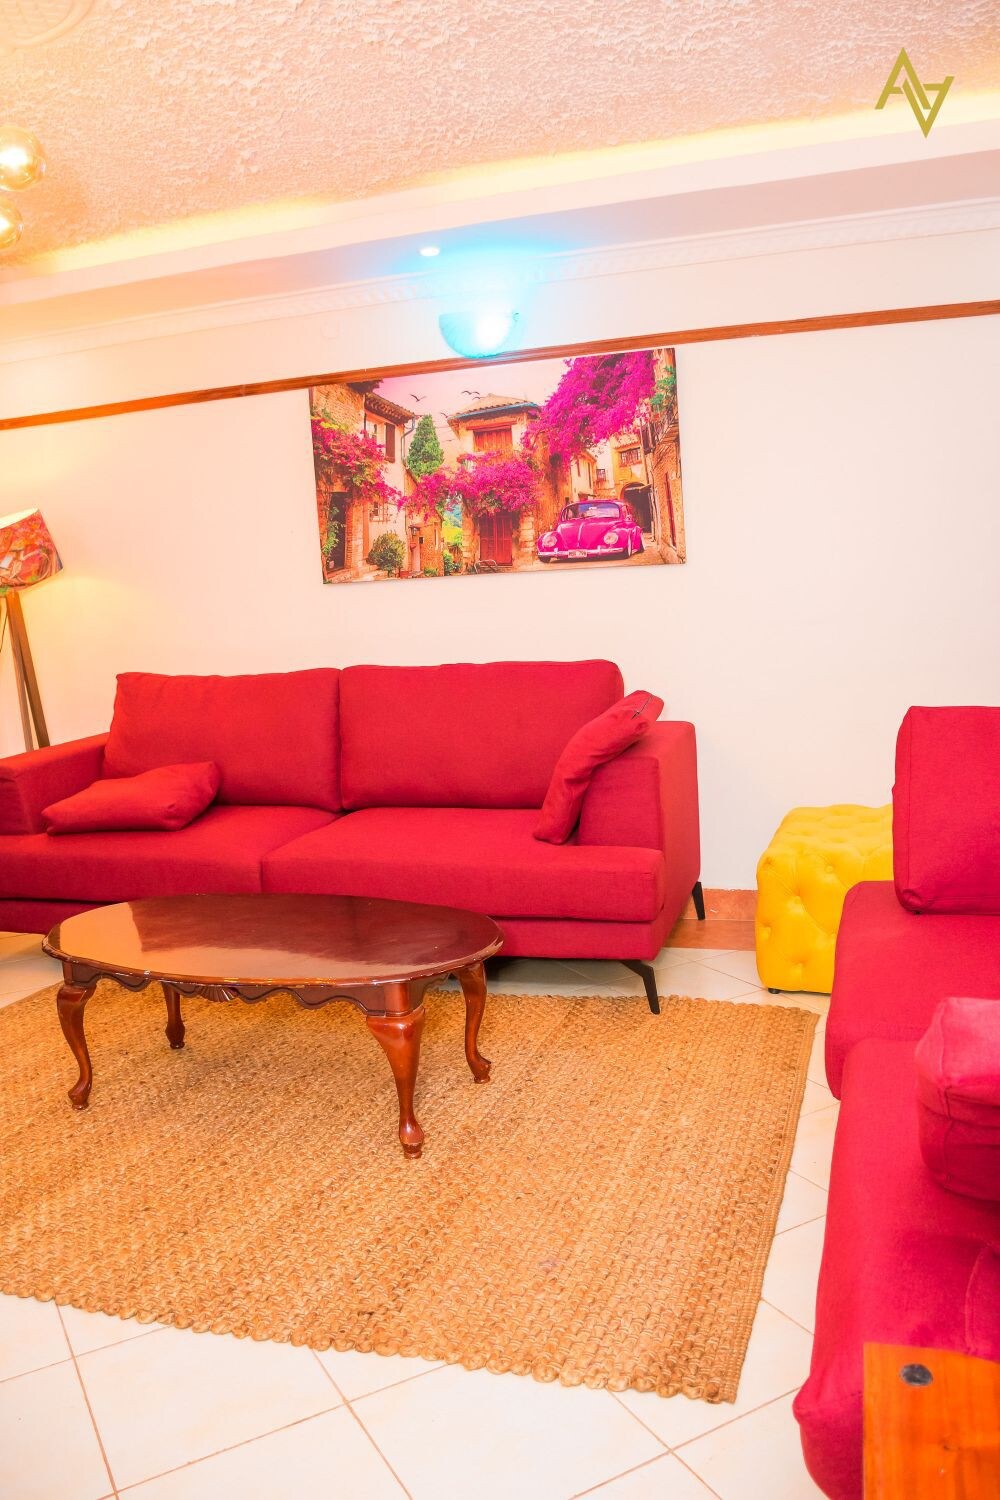 Unique & modern eldoret serviced apartment 3 beds